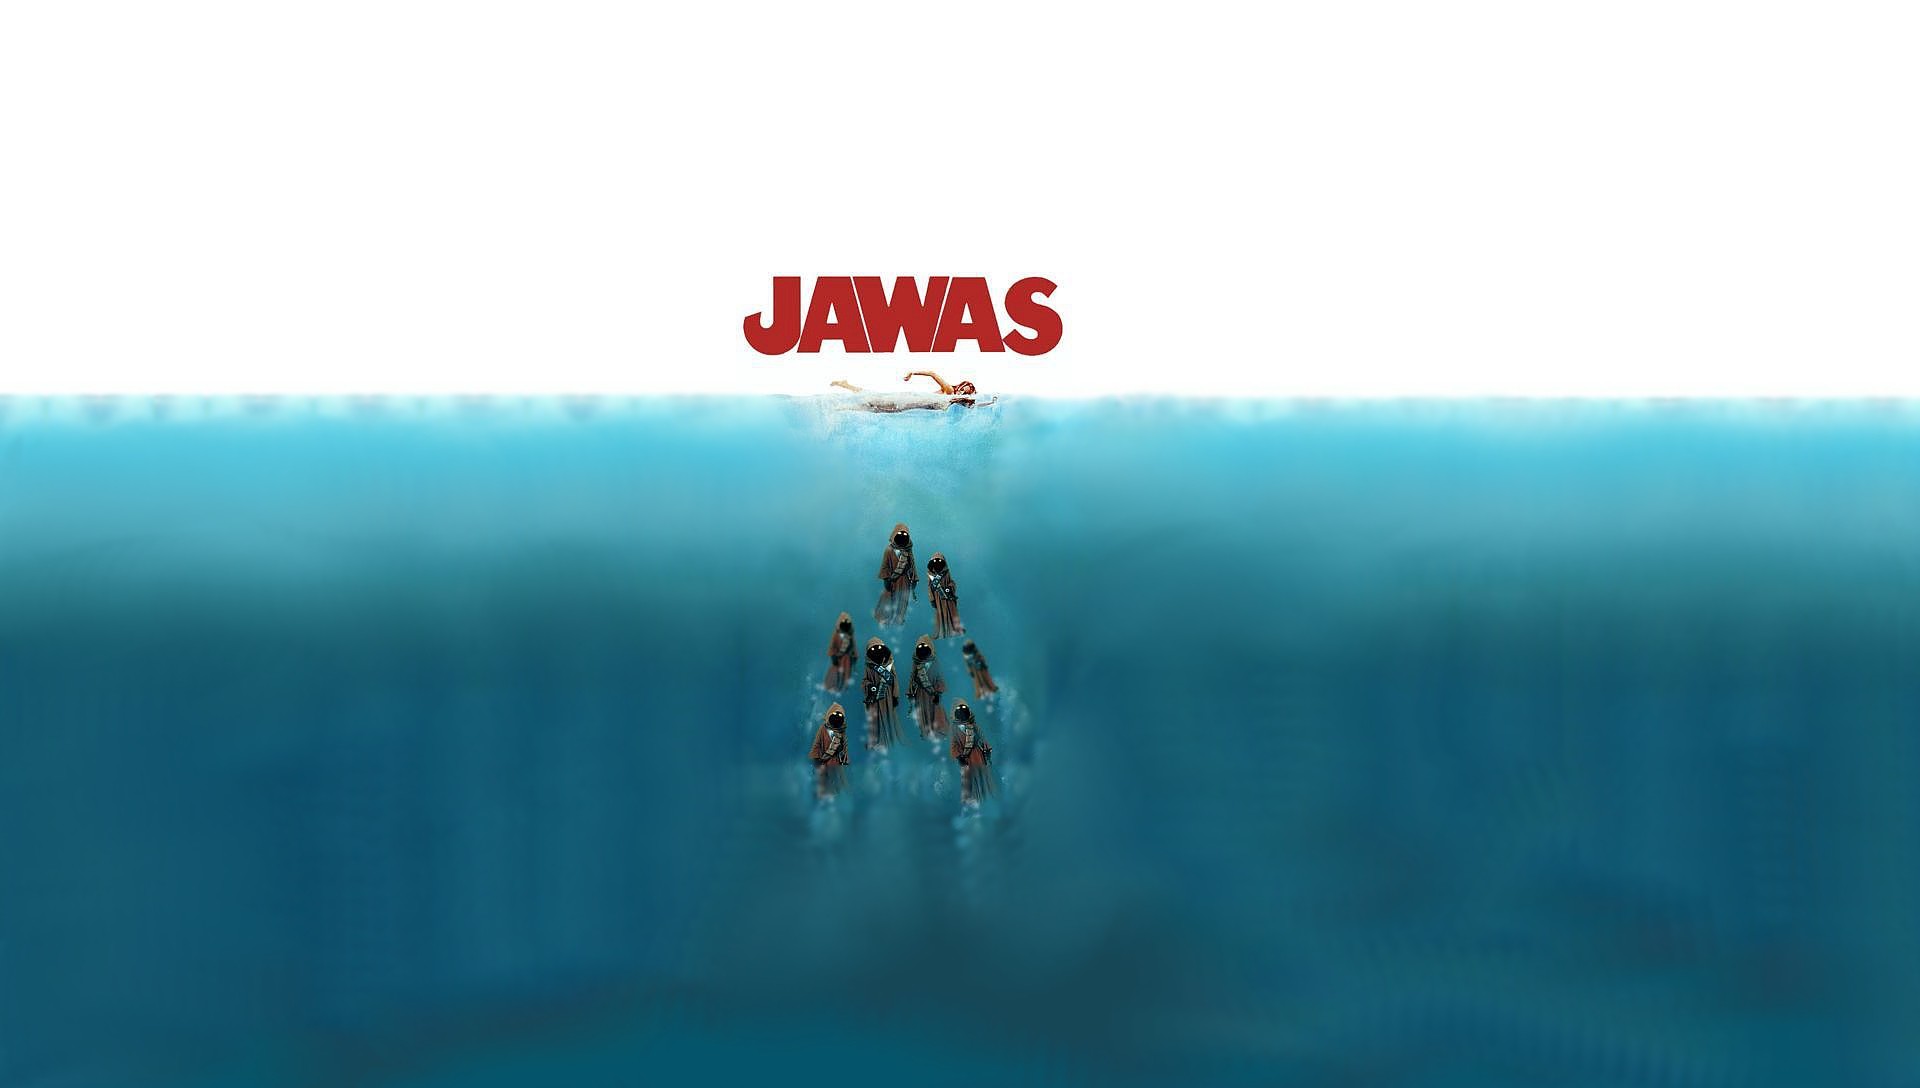 1920x1088 Humor - Movie Star Wars Jaws Jawas (Star Wars) Underwater Ocean Humor  Wallpaper